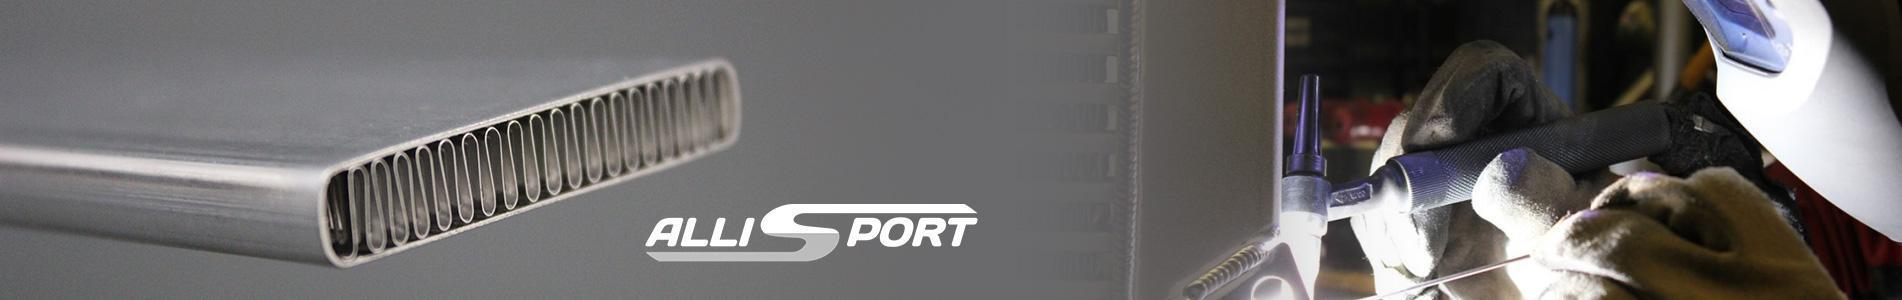 allisport tpuk page banner